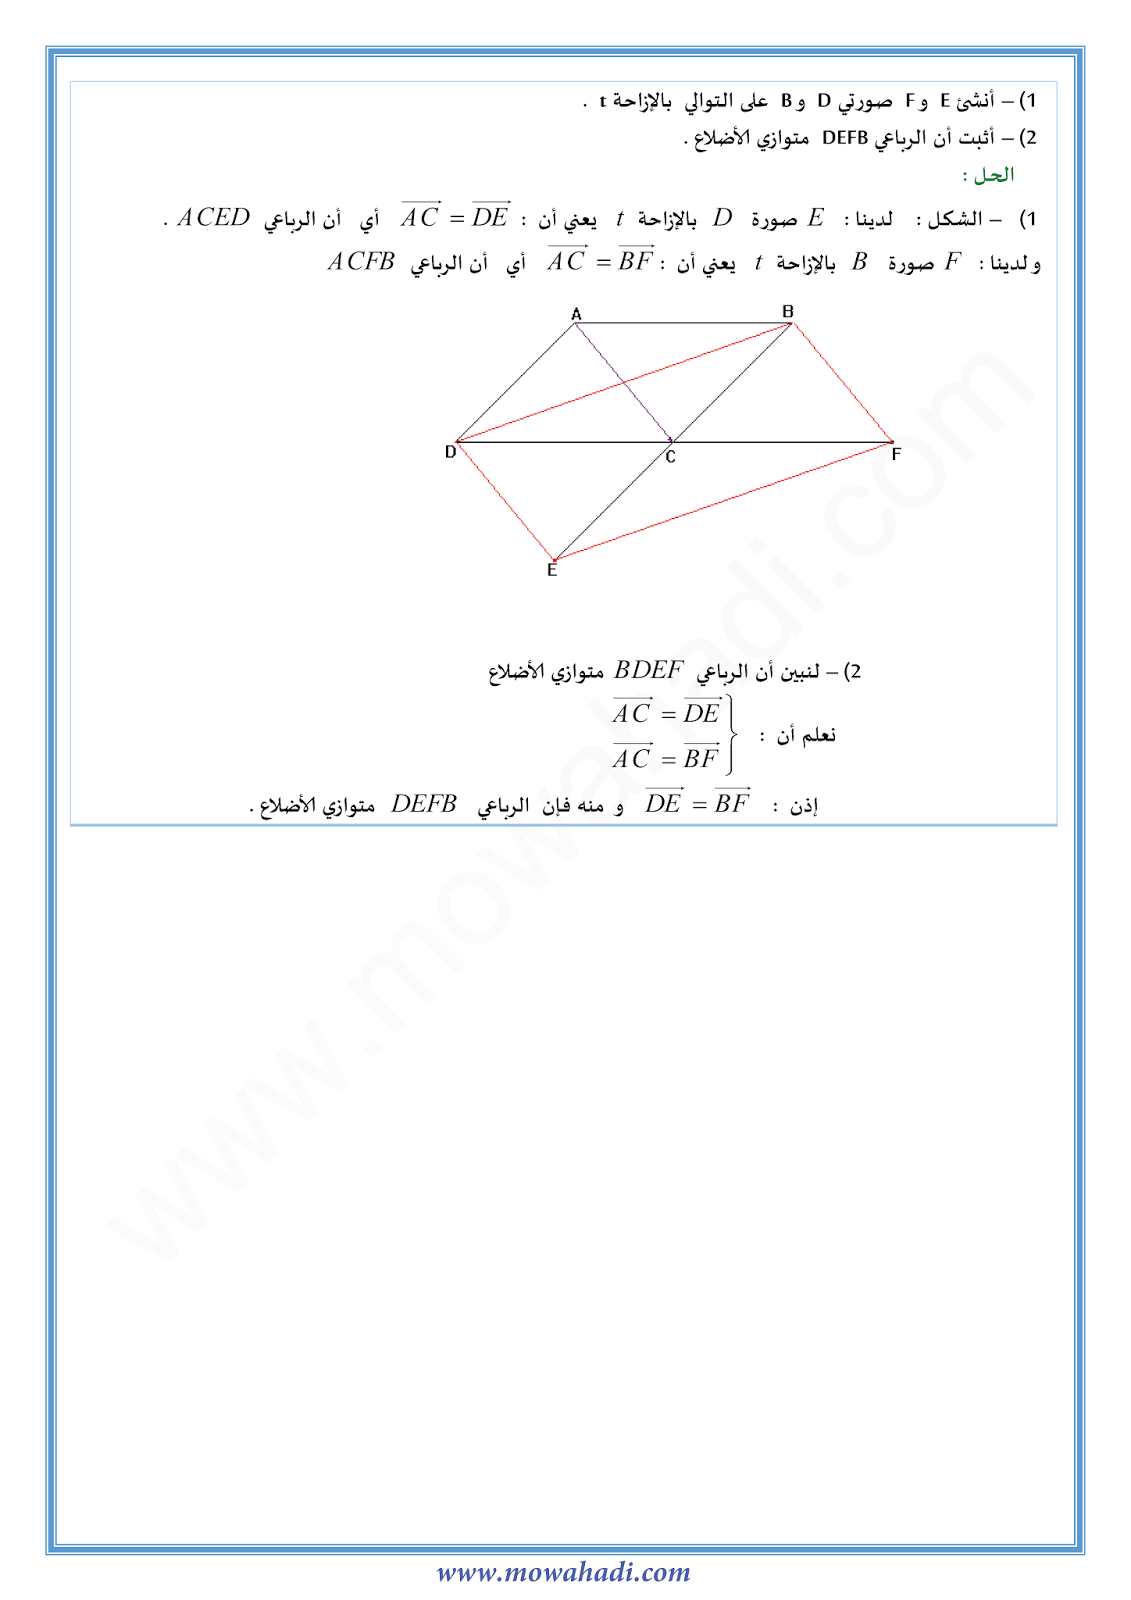 درس الـمـتجهات و الإزاحـة للسنة الثانية اعدادي في مادة الرياضيات 14-cours-math2_004